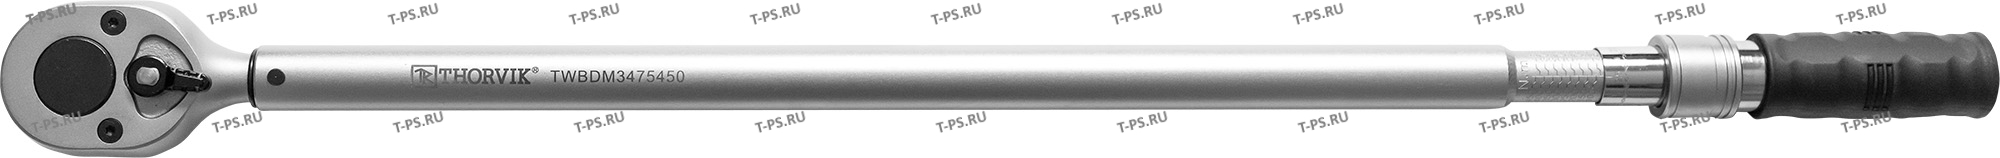 TWBDM3475450 Ключ динамометрический двусторонний 34DR, 75-450 Нм